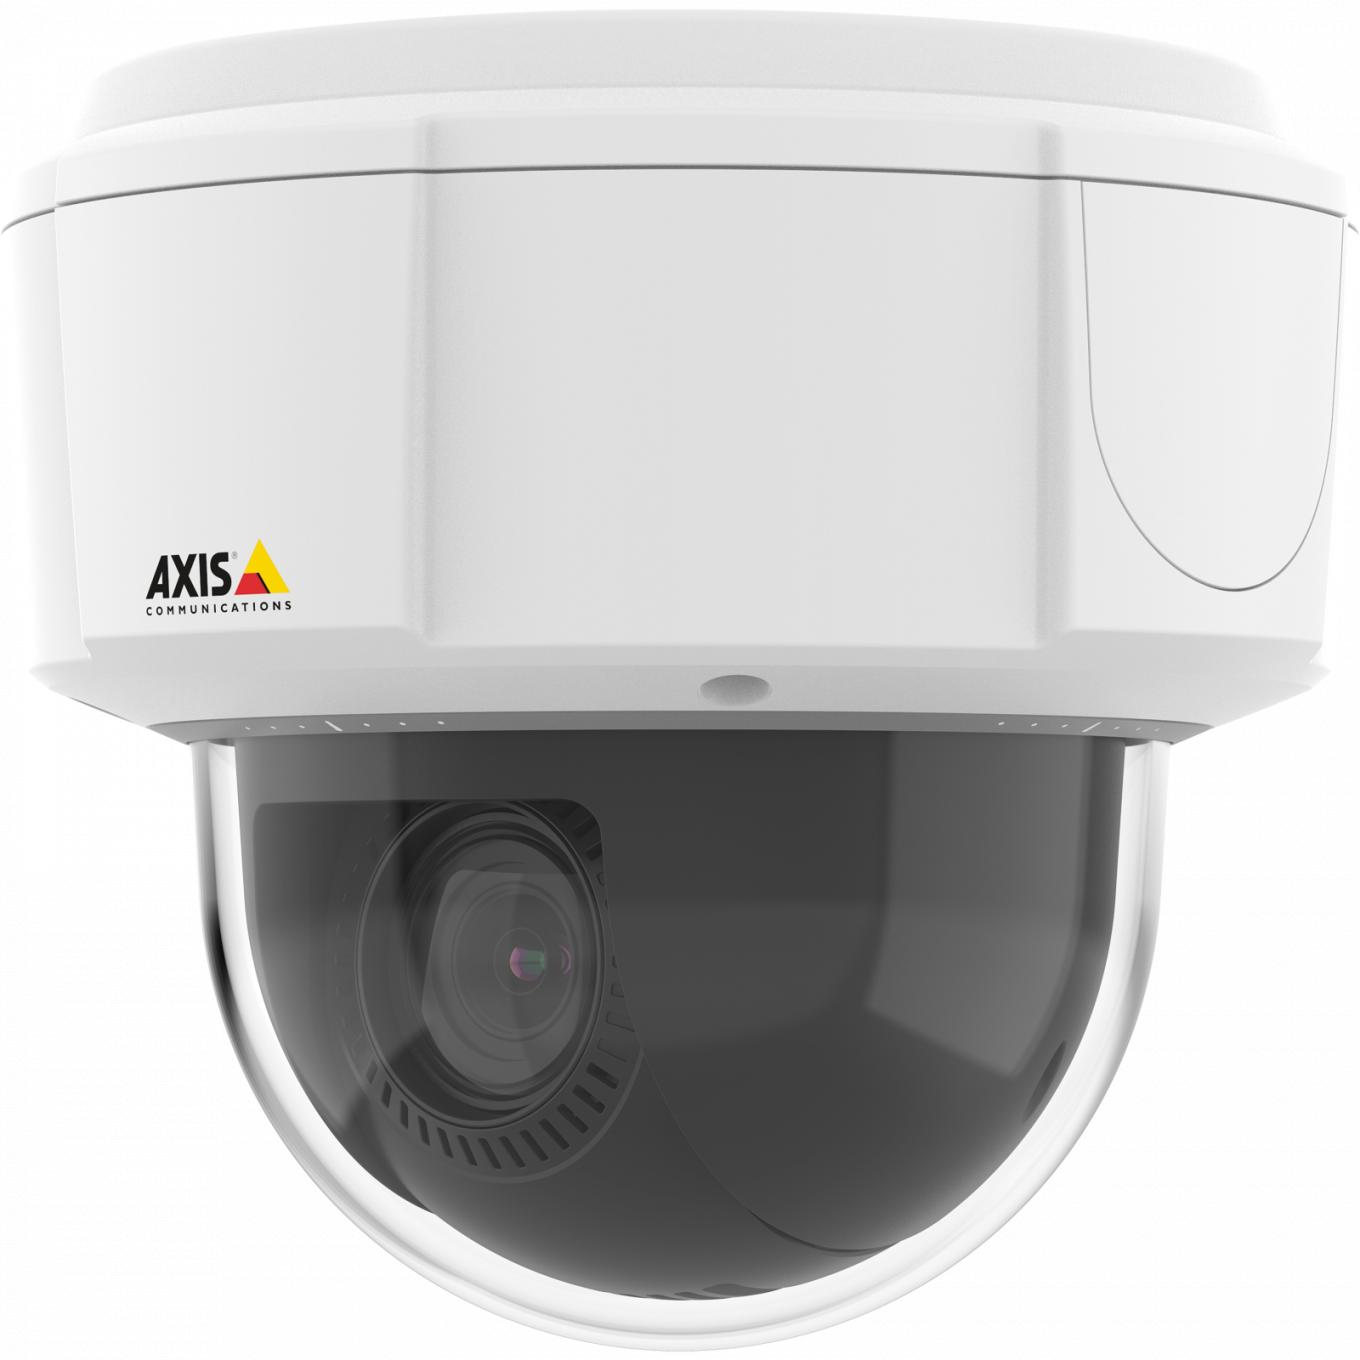 Axis IP Camera M5525-E è dotata di HDTV 1080p e zoom ottico 10x